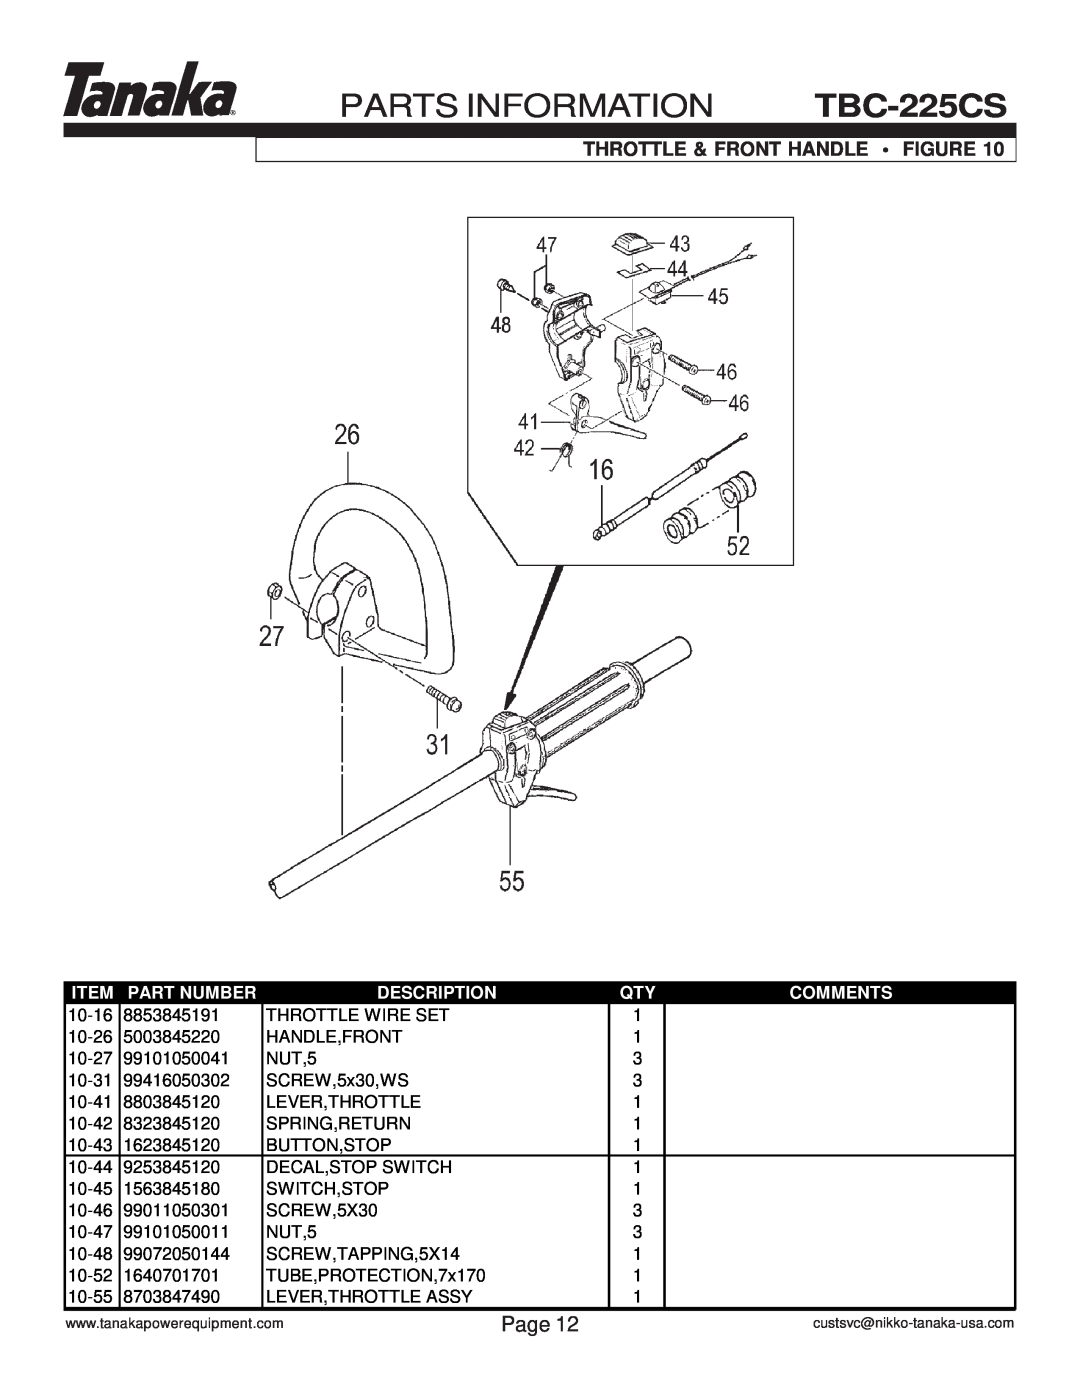 Tanaka manual Throttle & Front Handle Figure, PARTS INFORMATION TBC-225CS, Page, Part Number, Description, Comments 